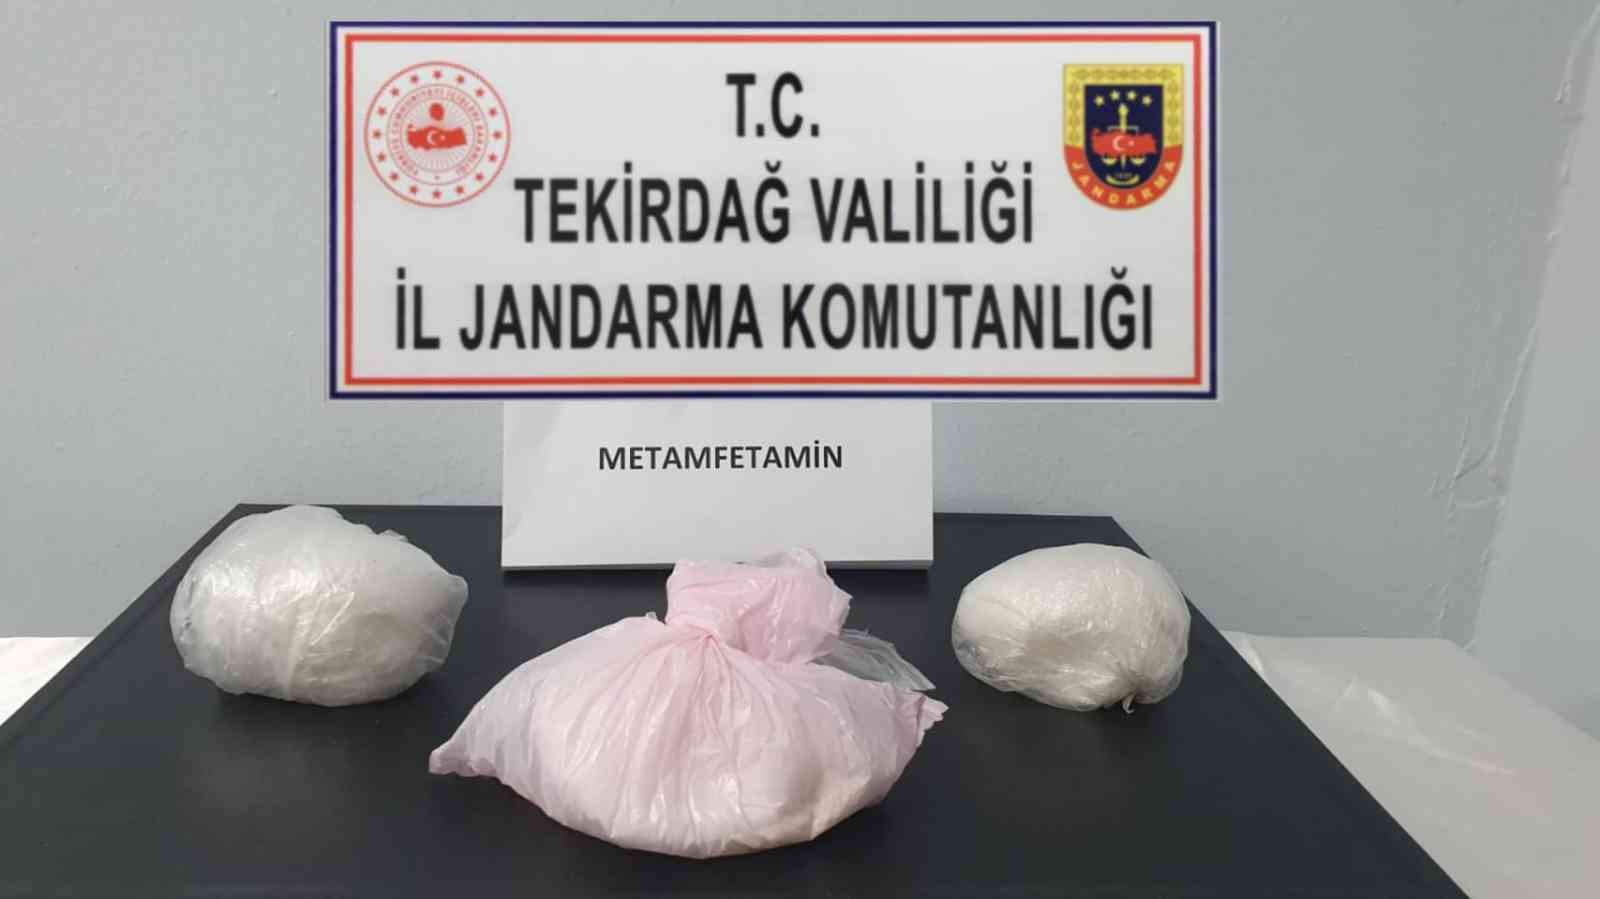 İstanbul’dan getirdikleri uyuşturucuyu Tekirdağ’da satarken yakalandılar #tekirdag